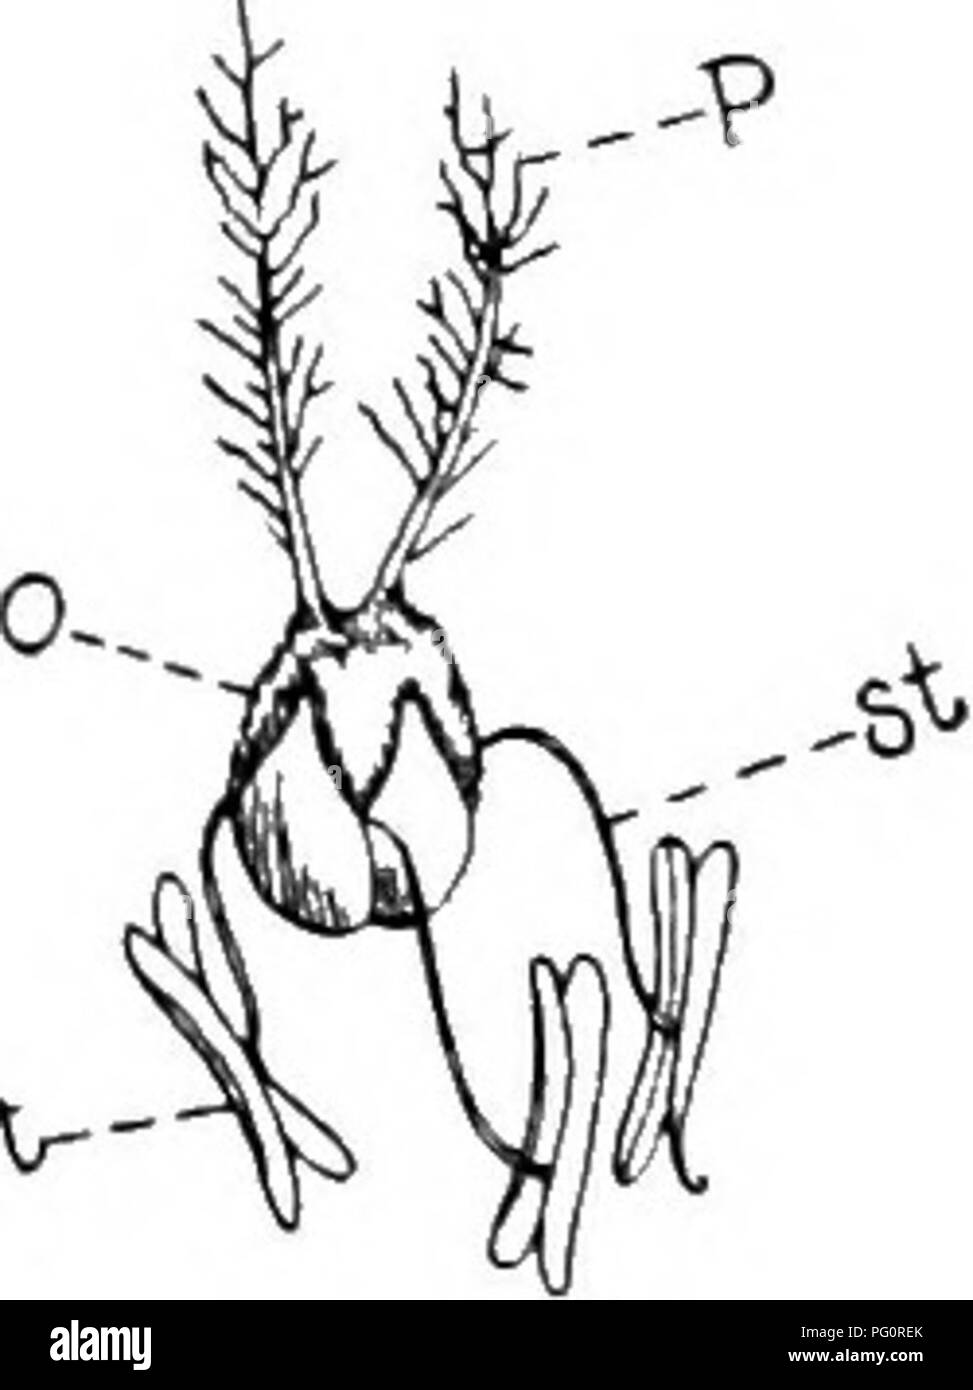 . Principes de culture végétale : an elementary treatise conçu comme un texte-livre pour les débutants dans l'agriculture et l'horticulture. L'horticulture, la botanique. "--"B&gt ;. bV- FiG. 51. Fig. Wl. Fig. 53. Fig. .51. Épillet de blé ; St. stameos {Après Lamout et Decaisne). Fig. 52. La même disséqué, x, l'axe de l'épillet ; g,glumes ; bl, b2, l'est rien ; Bl, B2, fleurs déplacées de l'axe de l'est rien ; p s, l'intérieur n'est rien ; a, f ; anthères, de l'ovaire. Prantl (après). Fig. 53. Fleur de blé, élargies ; st., p ; étamines pistil ; o, de l'ovaire. (Après Lamout et Decaisne). Échelle des pièces qu'à la base, g. g. sont cal Banque D'Images